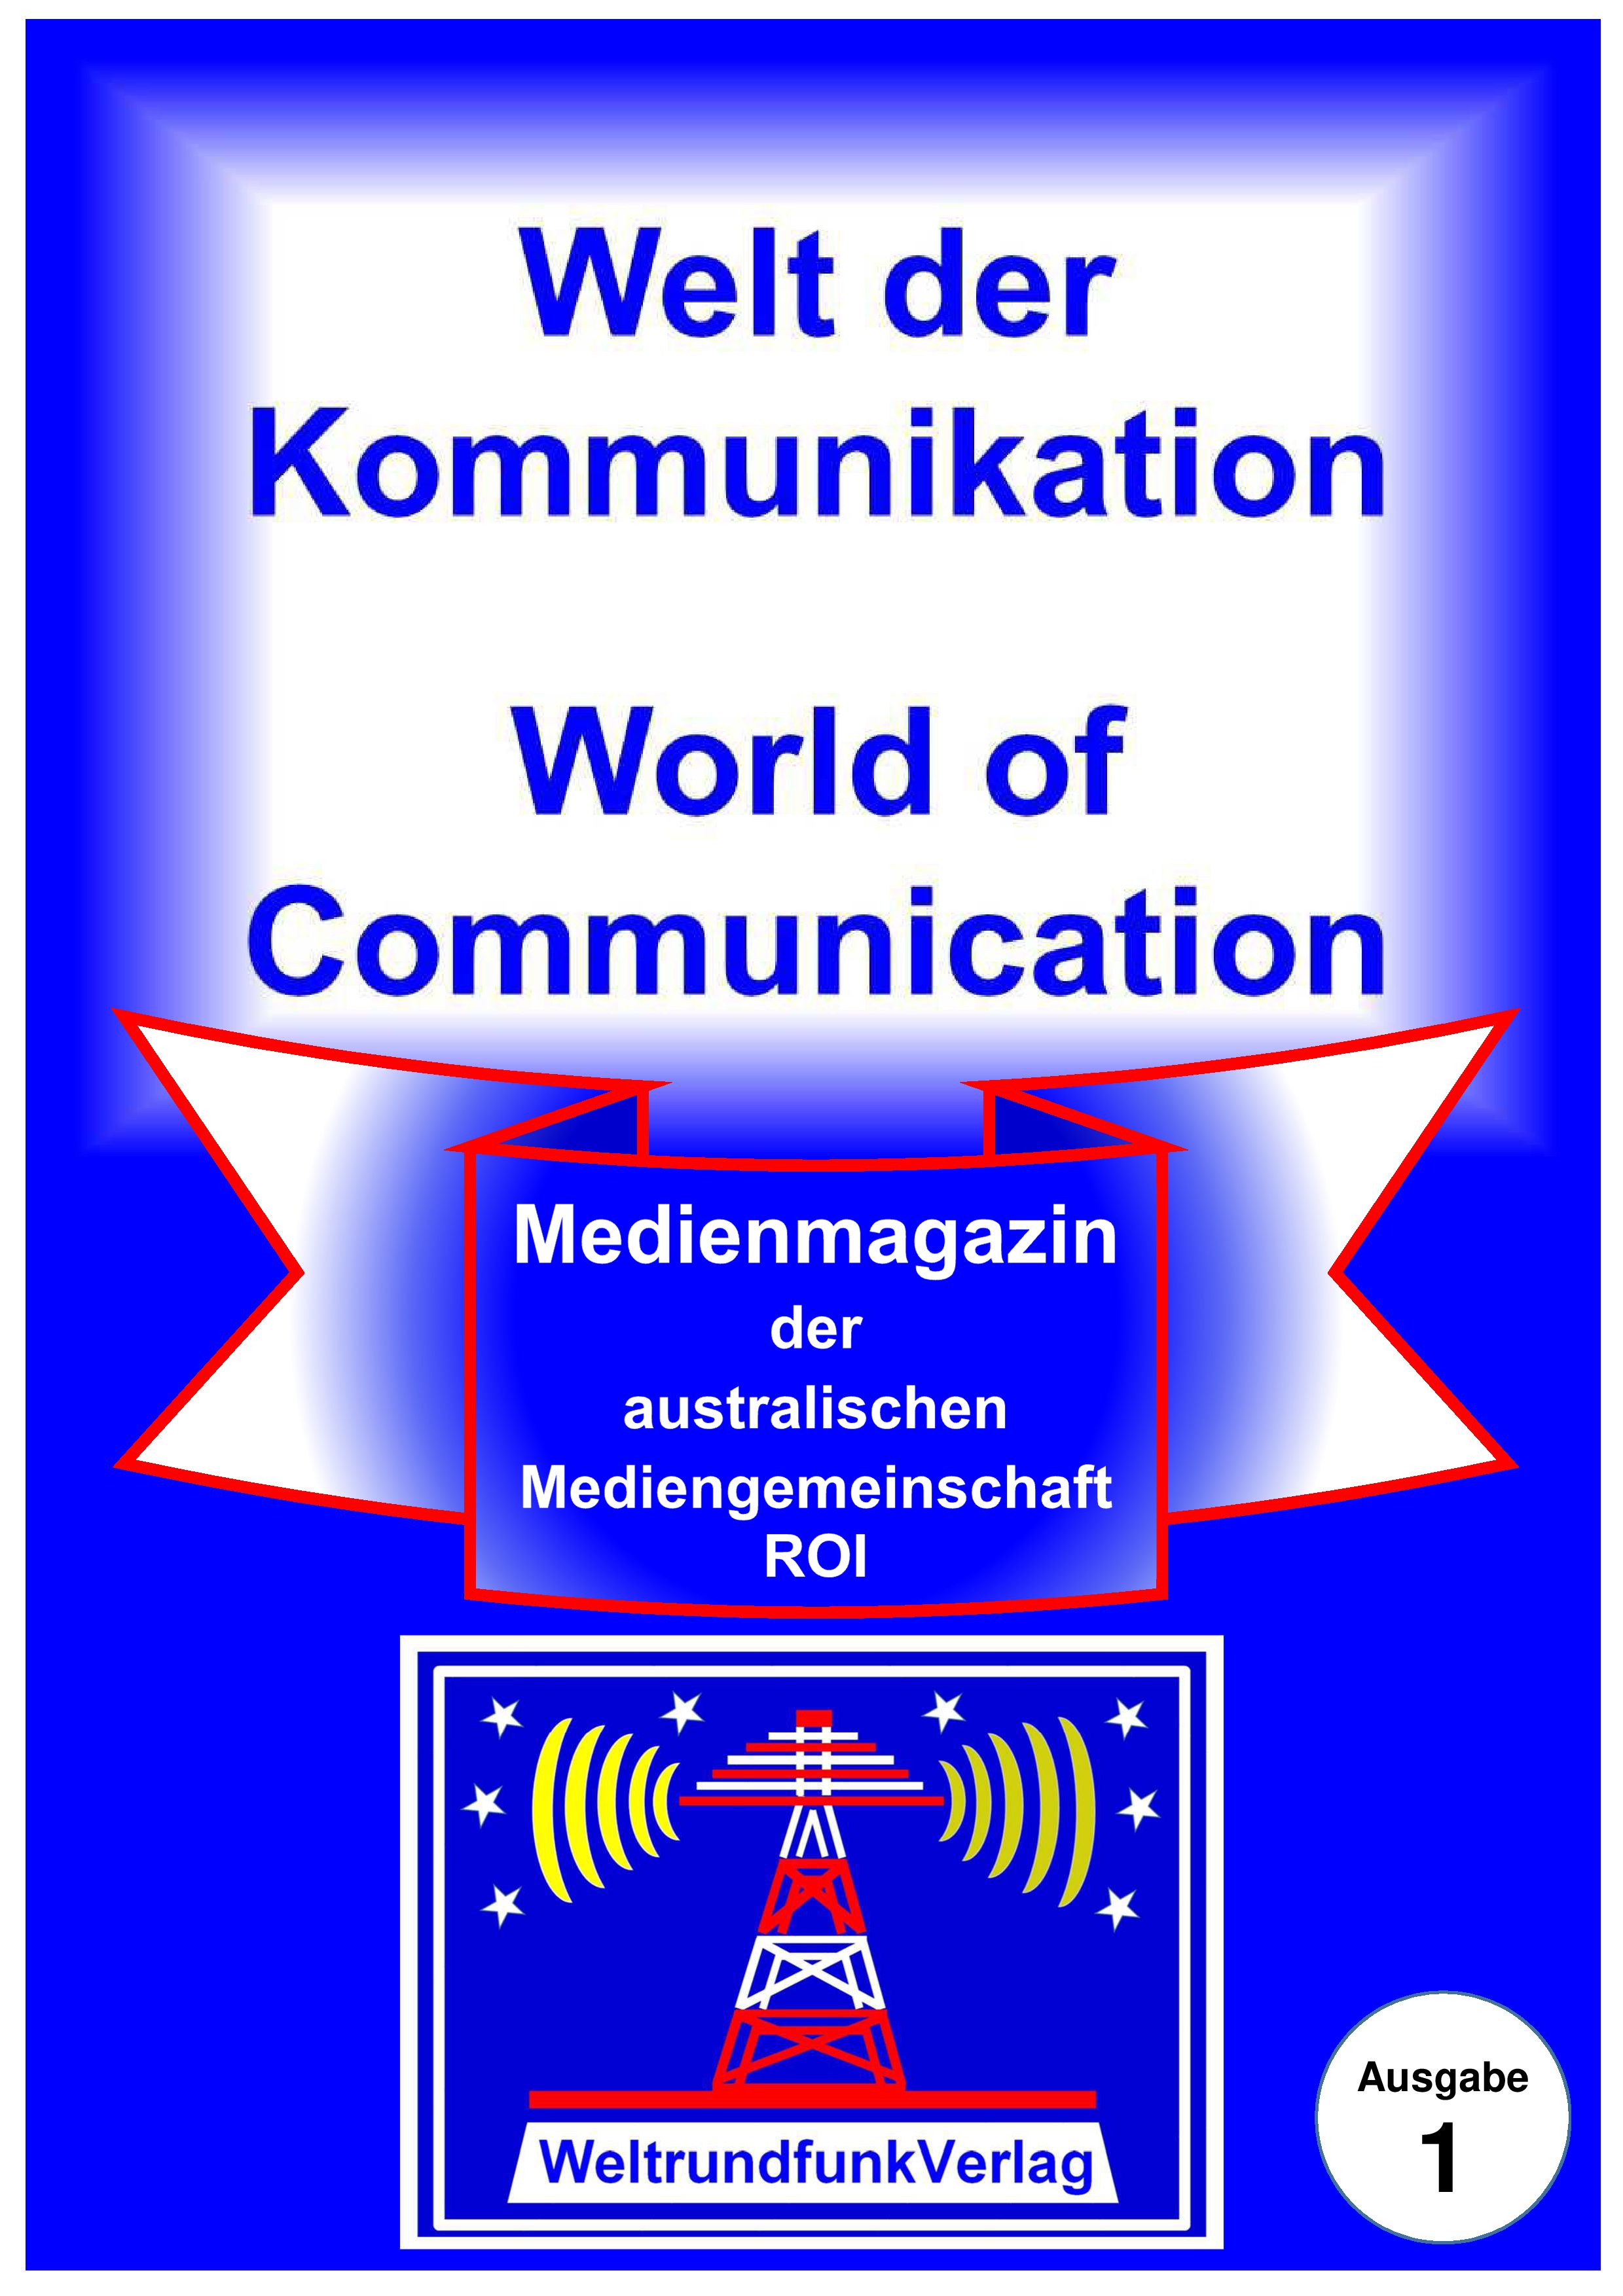 Medienmagazin Welt der Kommunikation - World of Communication